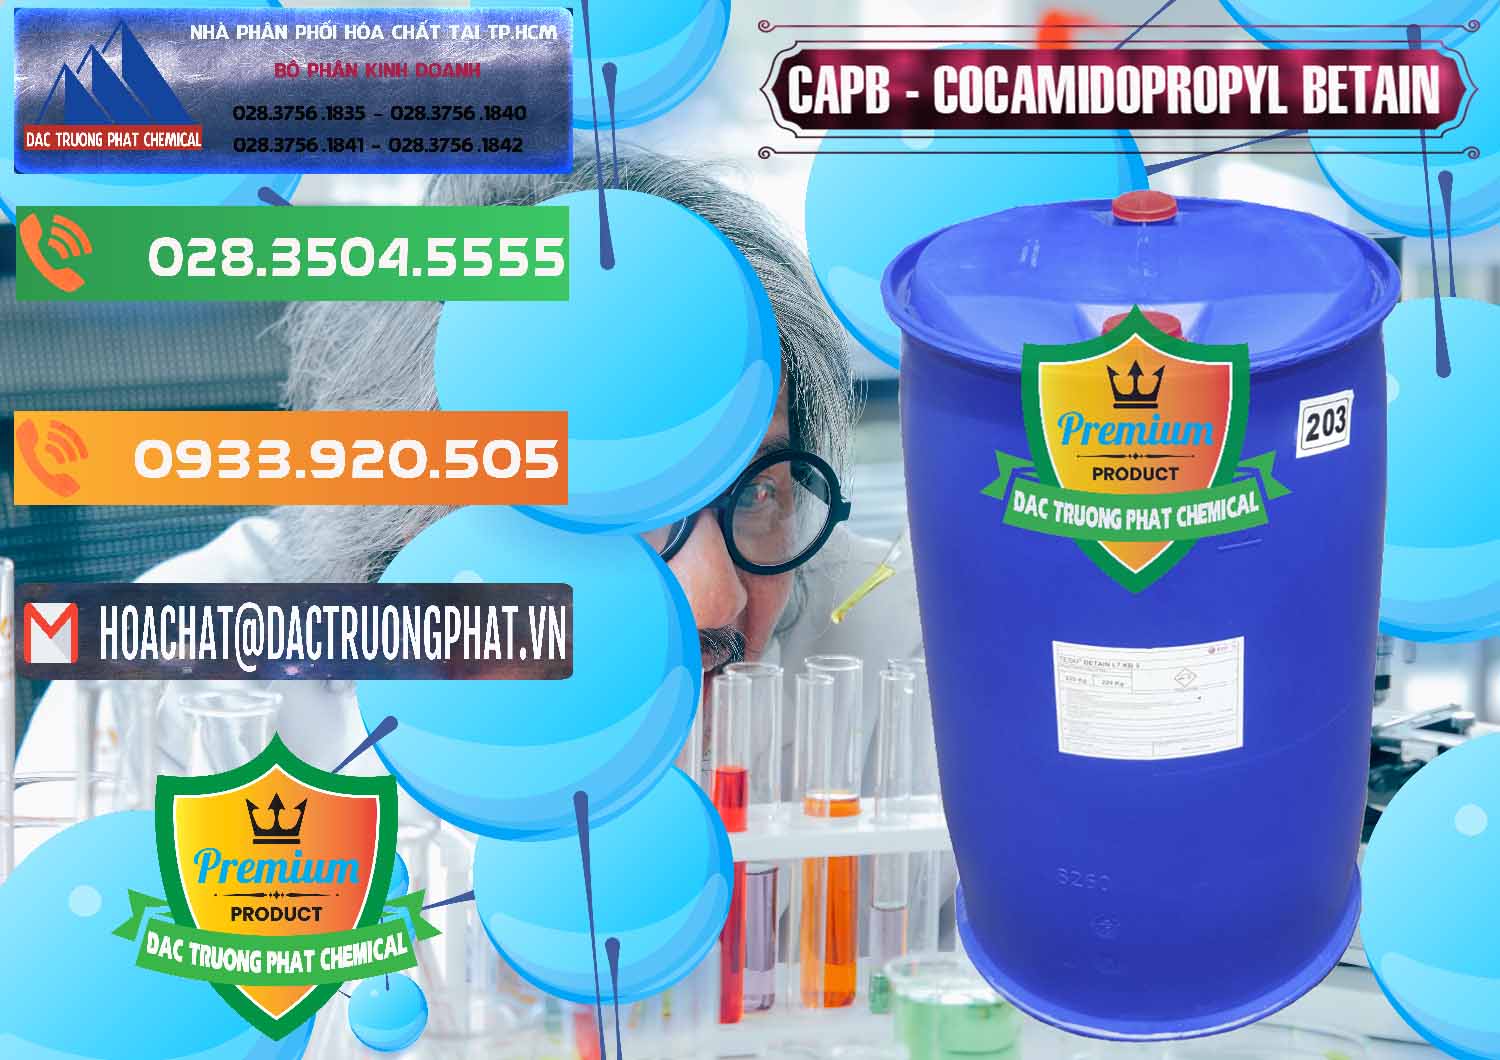 Đơn vị kinh doanh và bán Cocamidopropyl Betaine - CAPB Tego Indonesia - 0327 - Đơn vị cung ứng & phân phối hóa chất tại TP.HCM - hoachatxulynuoc.com.vn